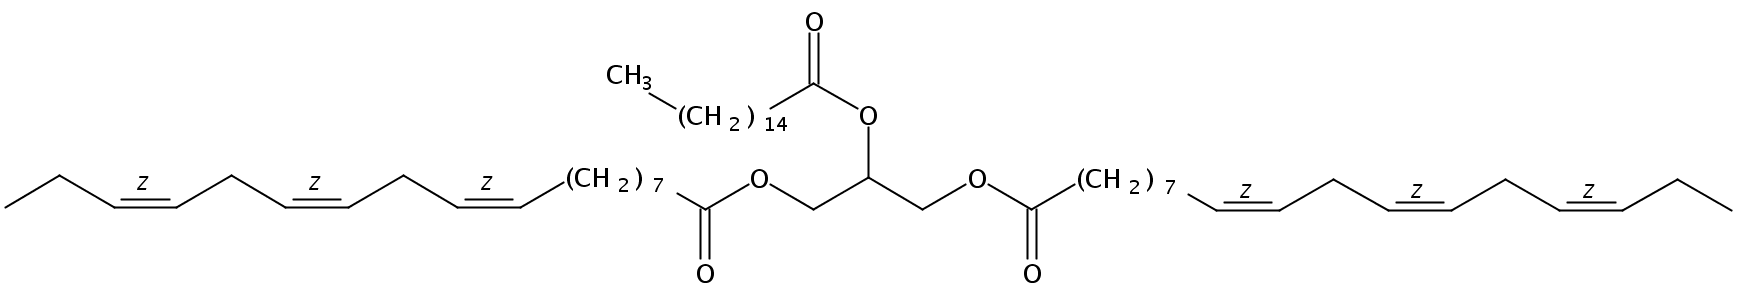 Structural formula of 1,3-Linolenin-2-Palmitin